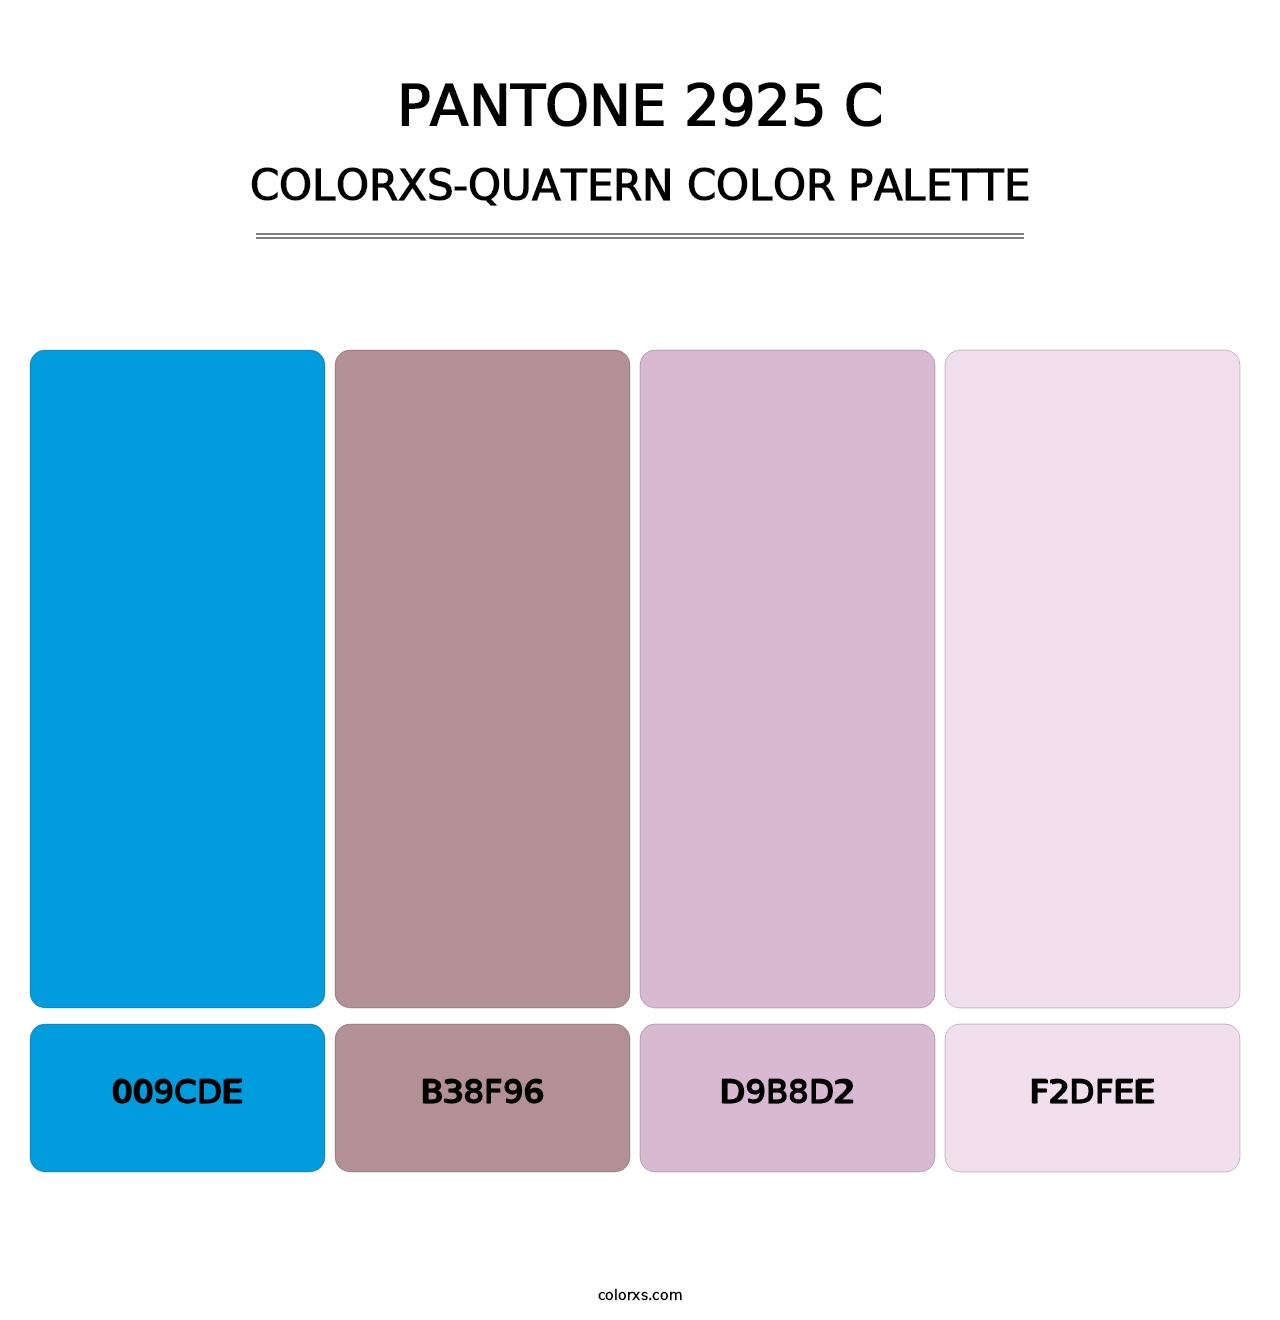 PANTONE 2925 C - Colorxs Quatern Palette